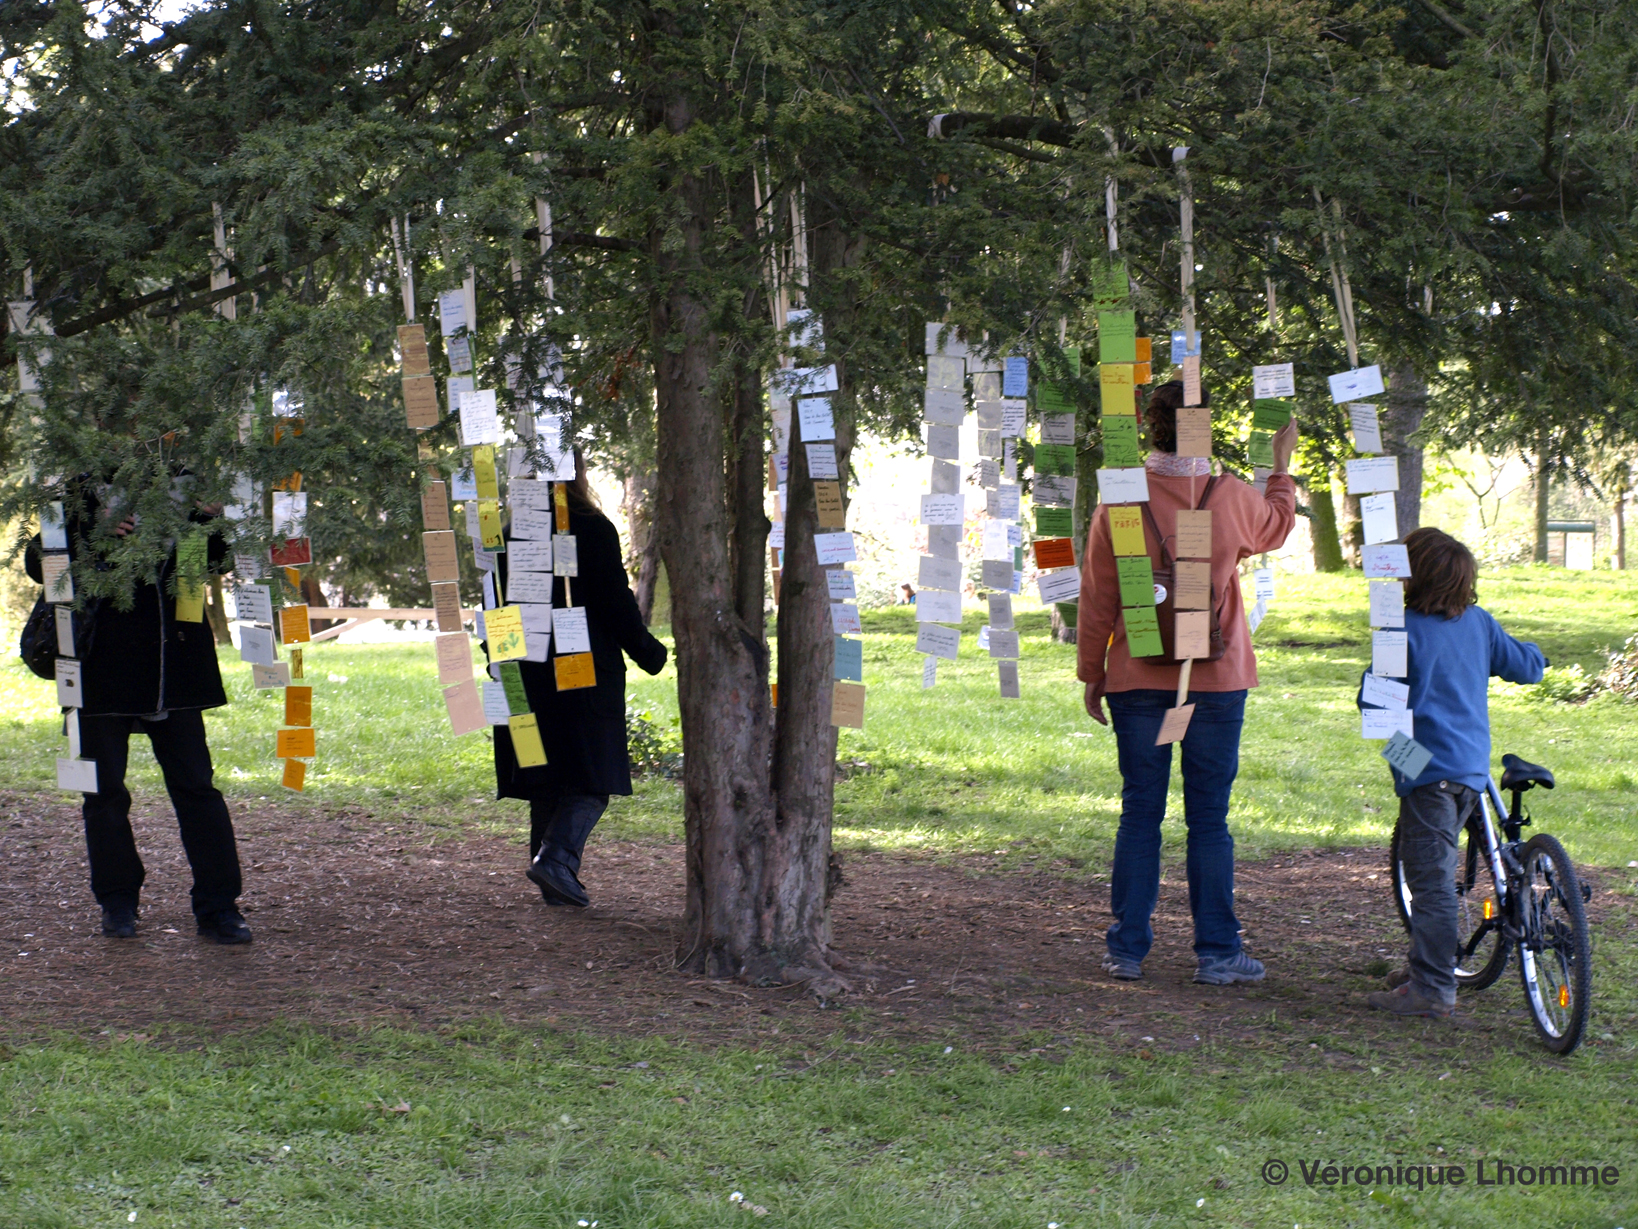 arbre à palabres accueillant les poèmes des enfants sur une idée de paule kingleur pour la biodiversité 2010 à paris